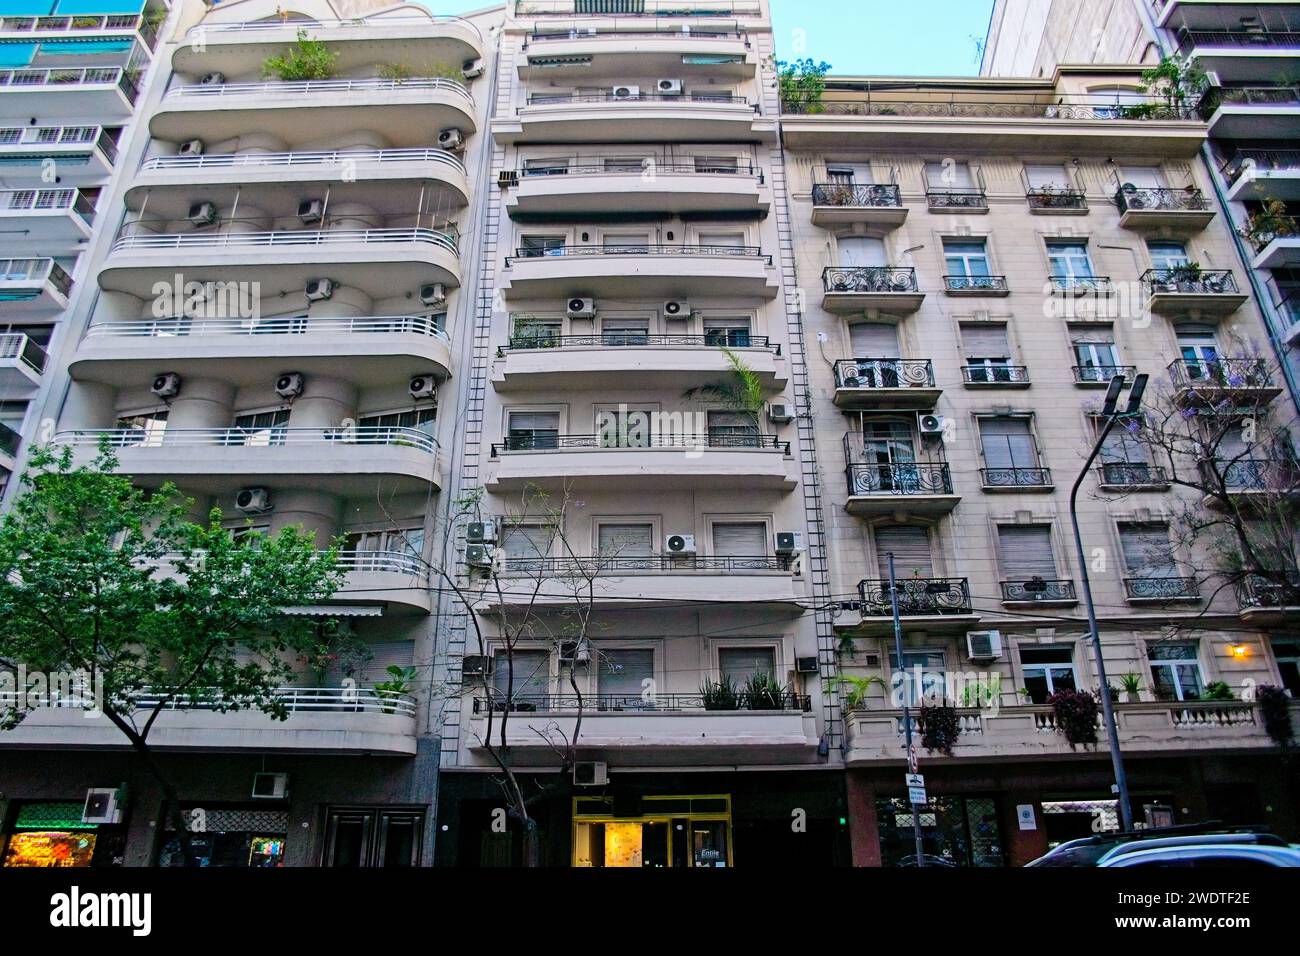 Buenos Aires, Argentine, Un immeuble typique de Buenos Aires dans le quartier populaire de la Recoleta avec un mélange de styles architecturaux. Banque D'Images